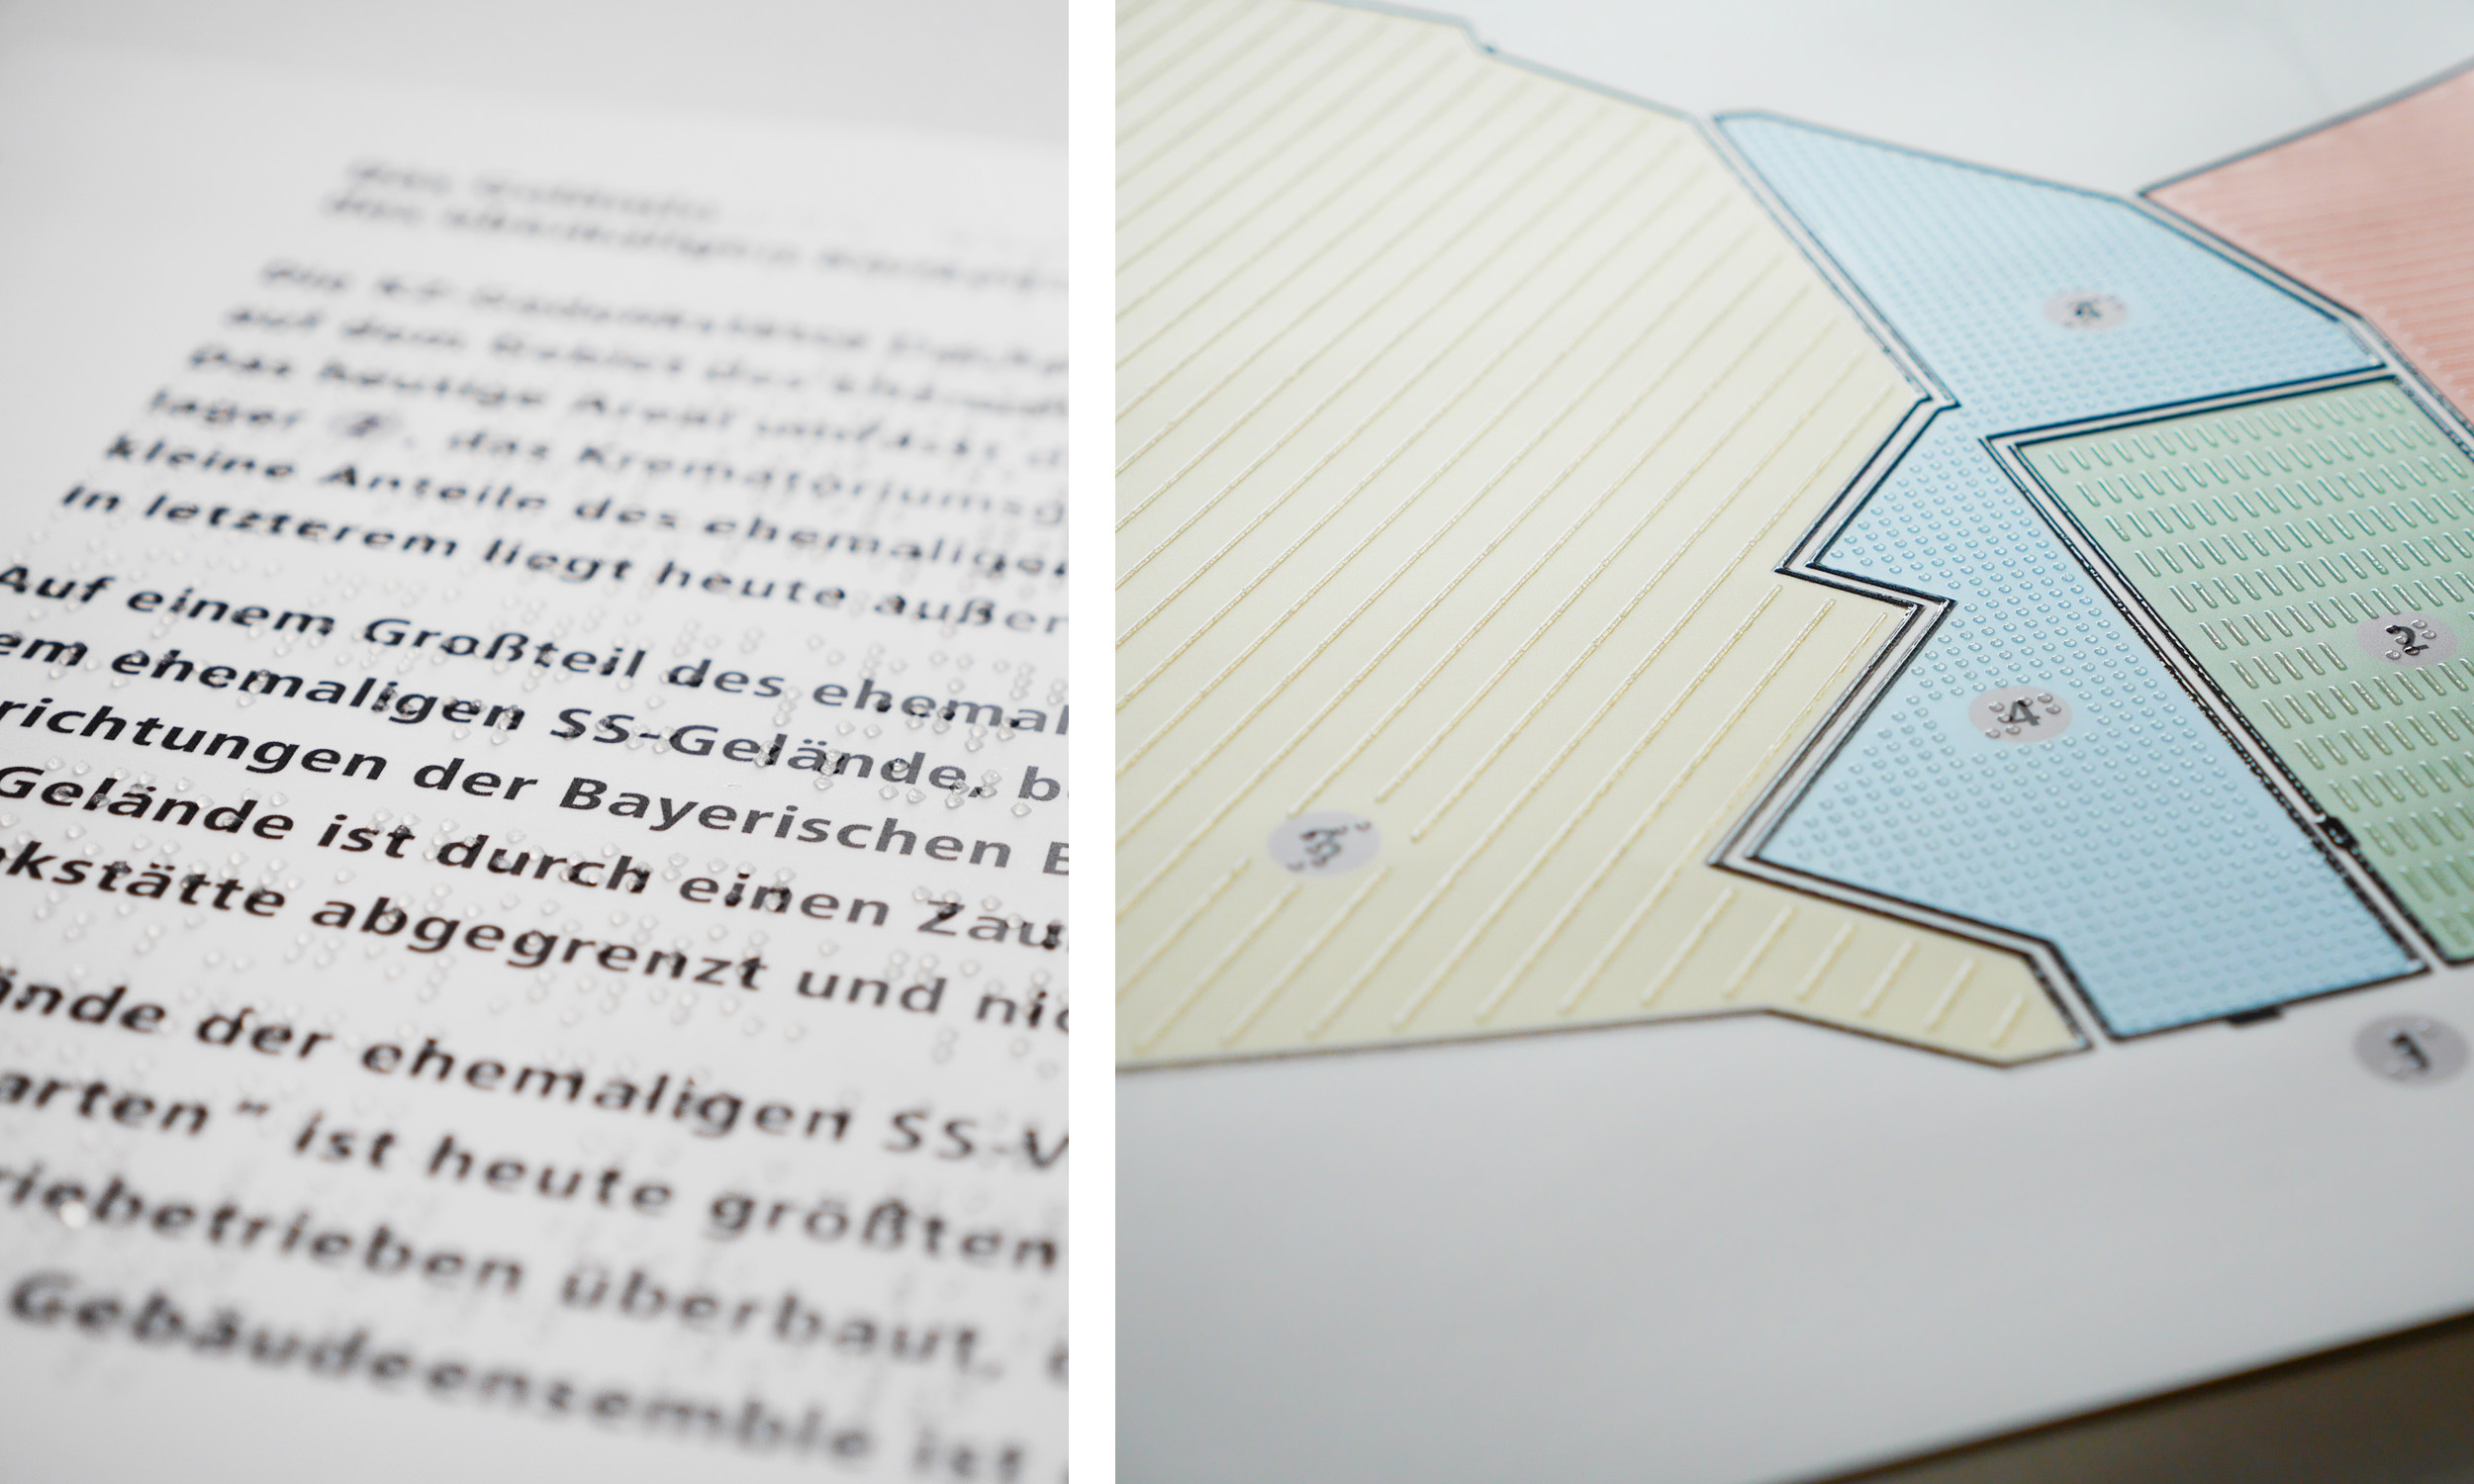 Zwei Detailfotos eines Tastplanes zur Darstellung von Textseiten mit Braille- und Großschrift sowie eines farbigen taktilen Lageplanes